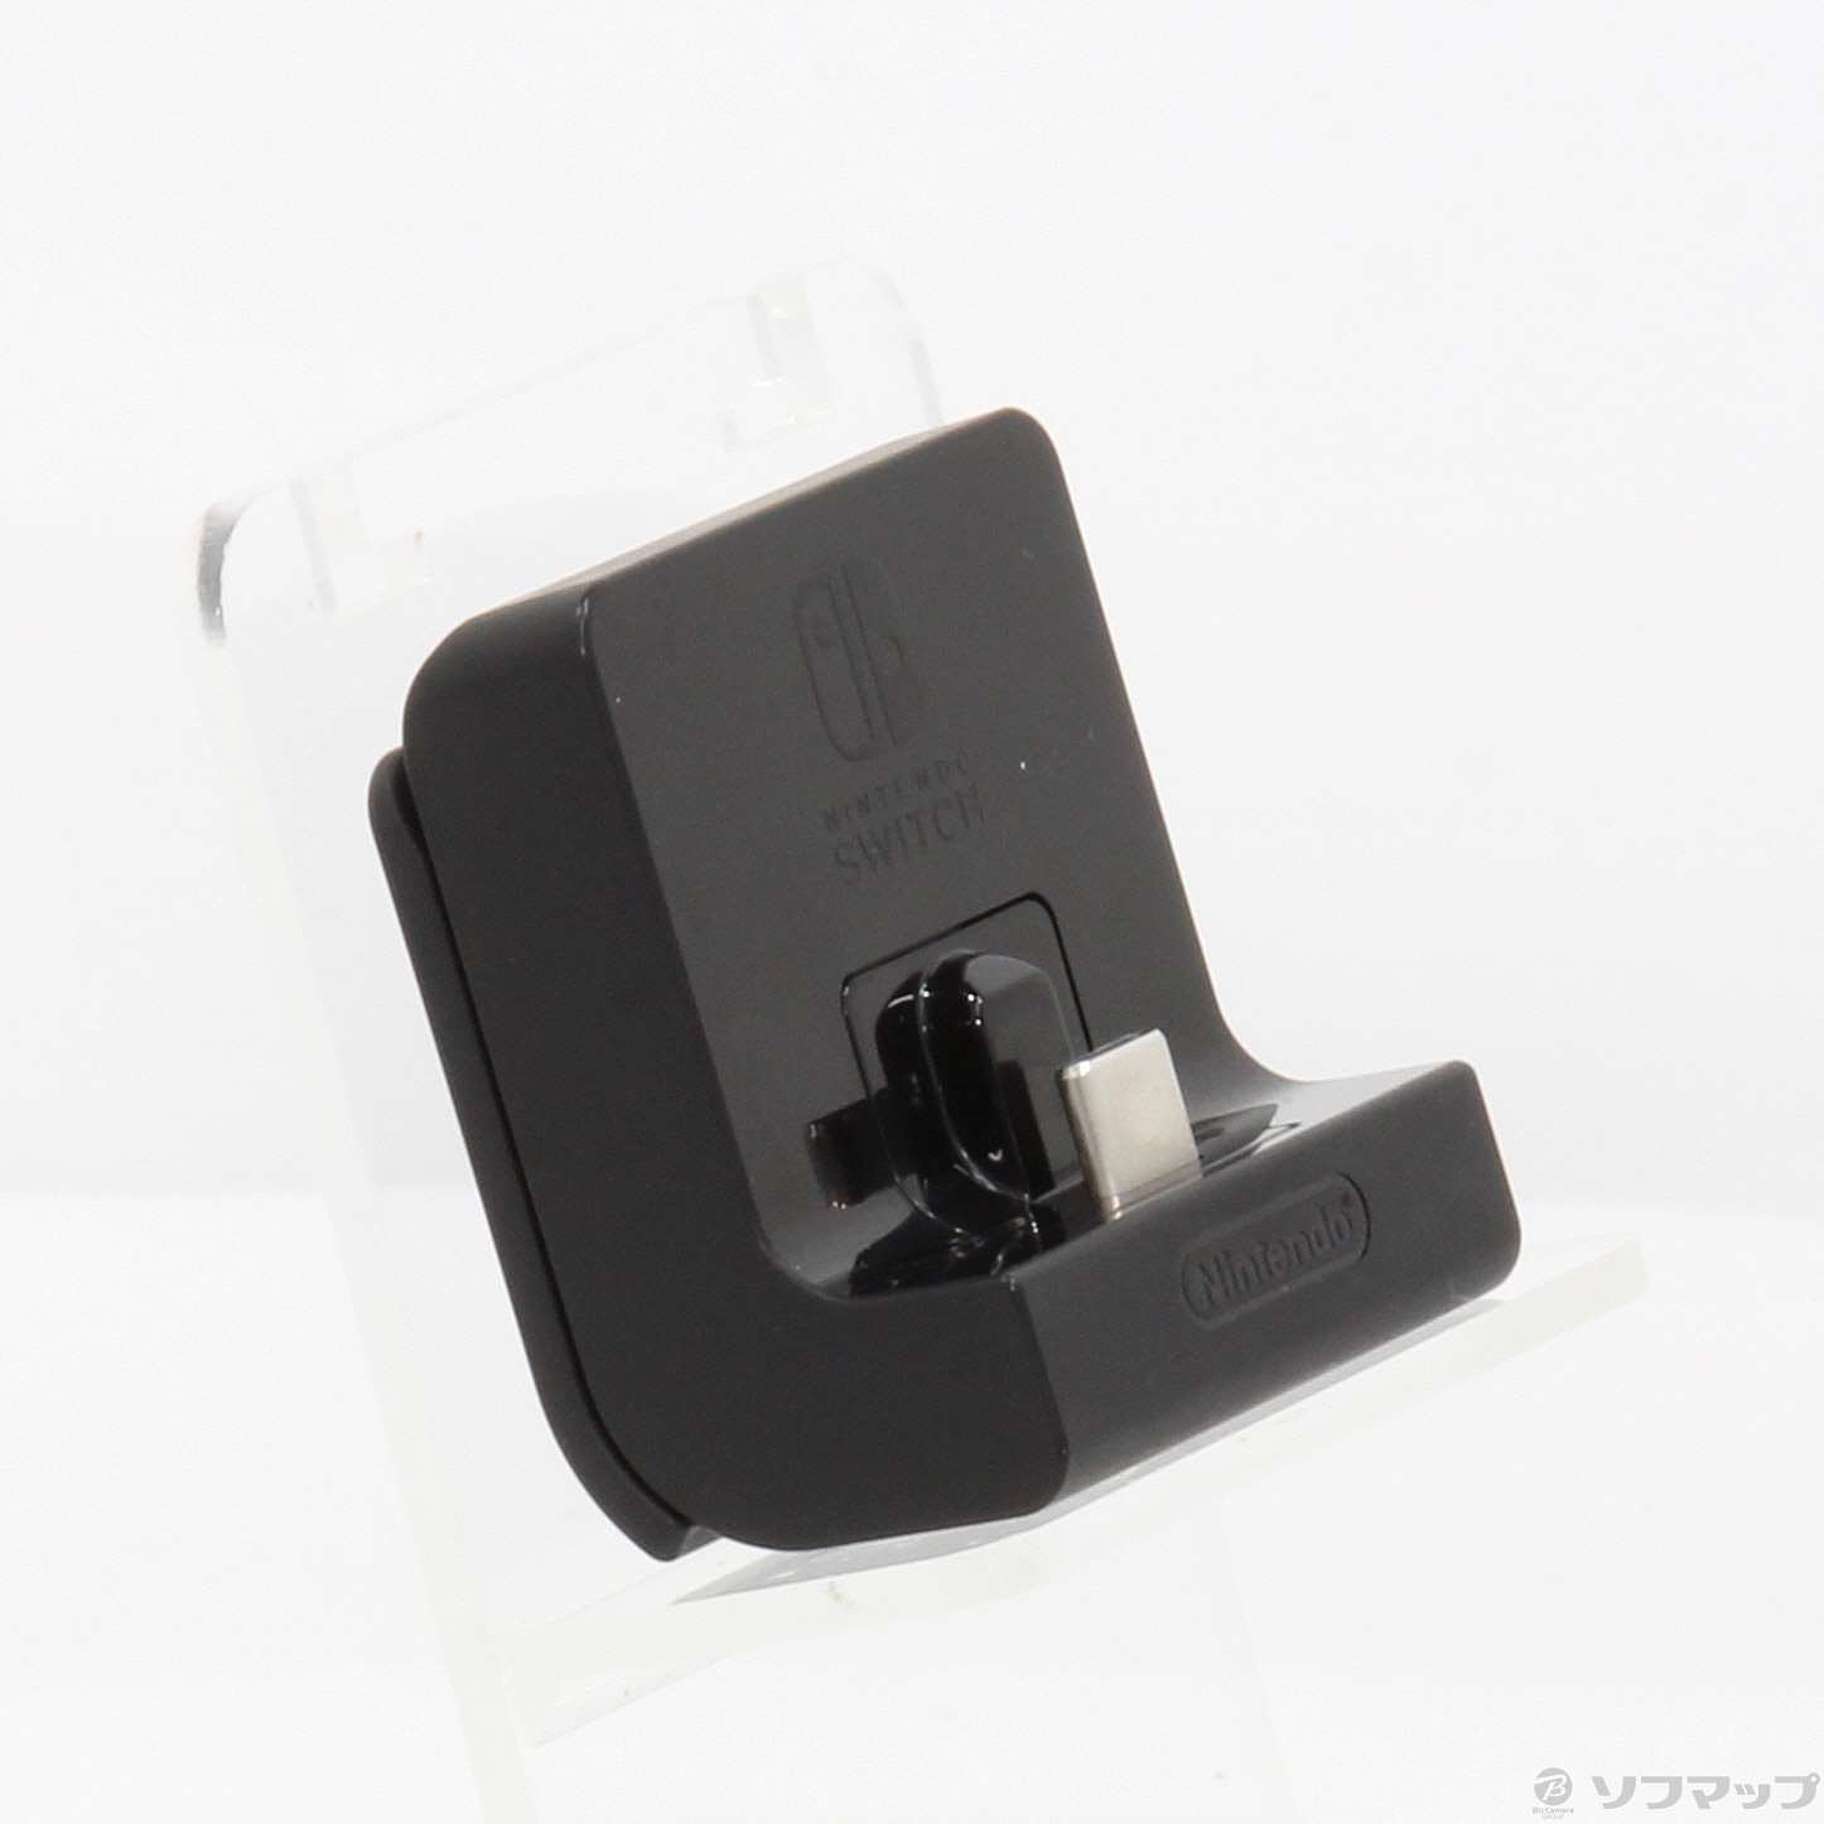 中古】セール対象品 Nintendo Switch充電スタンド (フリーストップ式